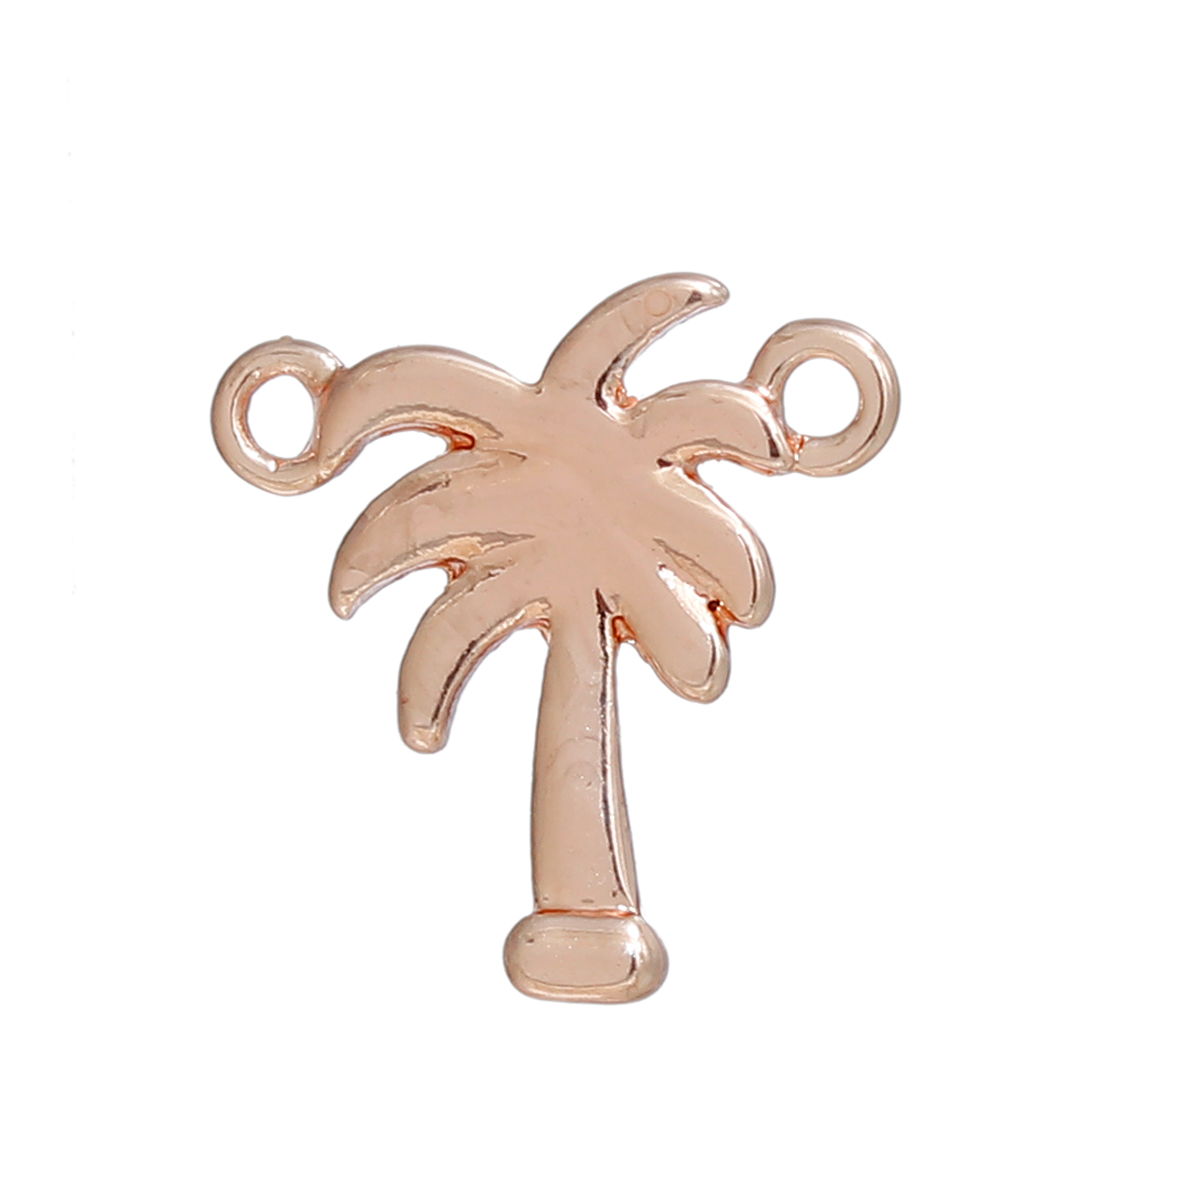 Un connecteur palmier des îles cocotier en métal couleur or rose